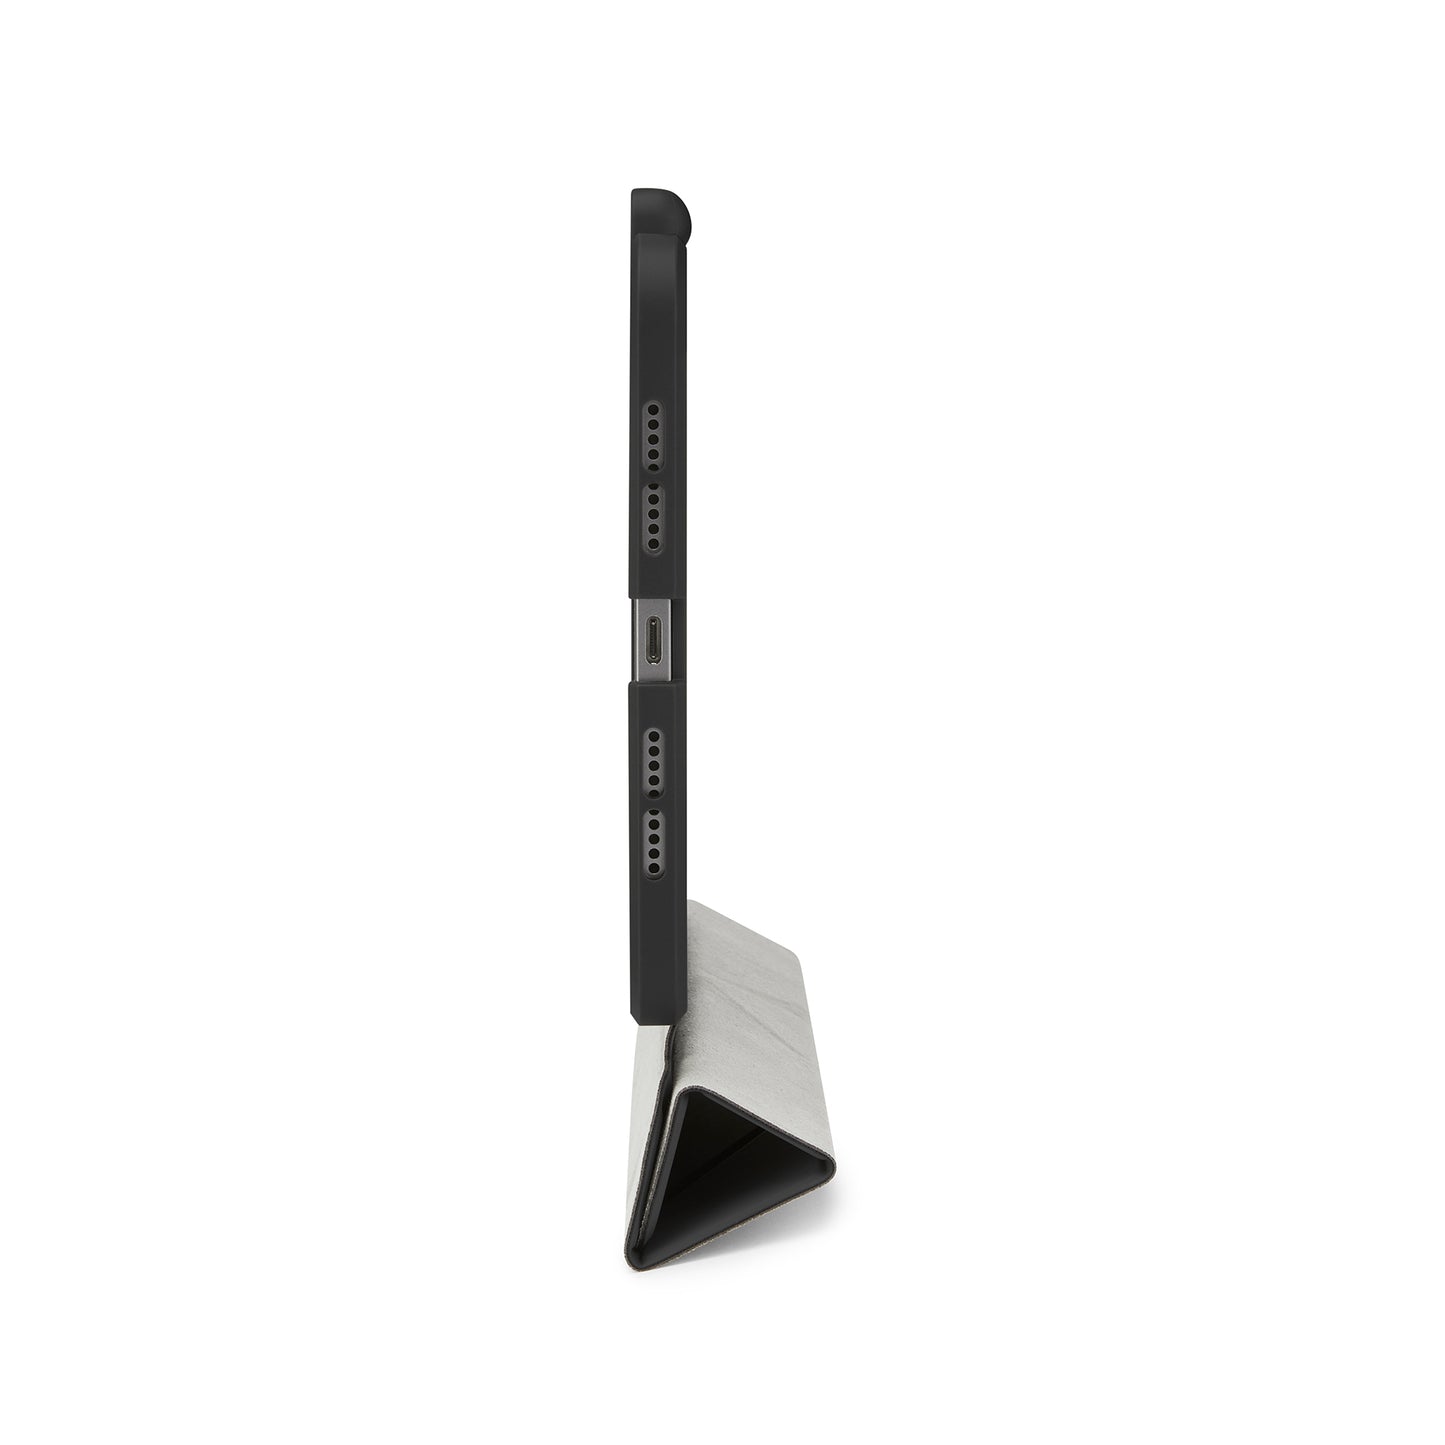 PIPETTO Origami No.3 Case for iPad Mini 6th Gen (2021) - Black